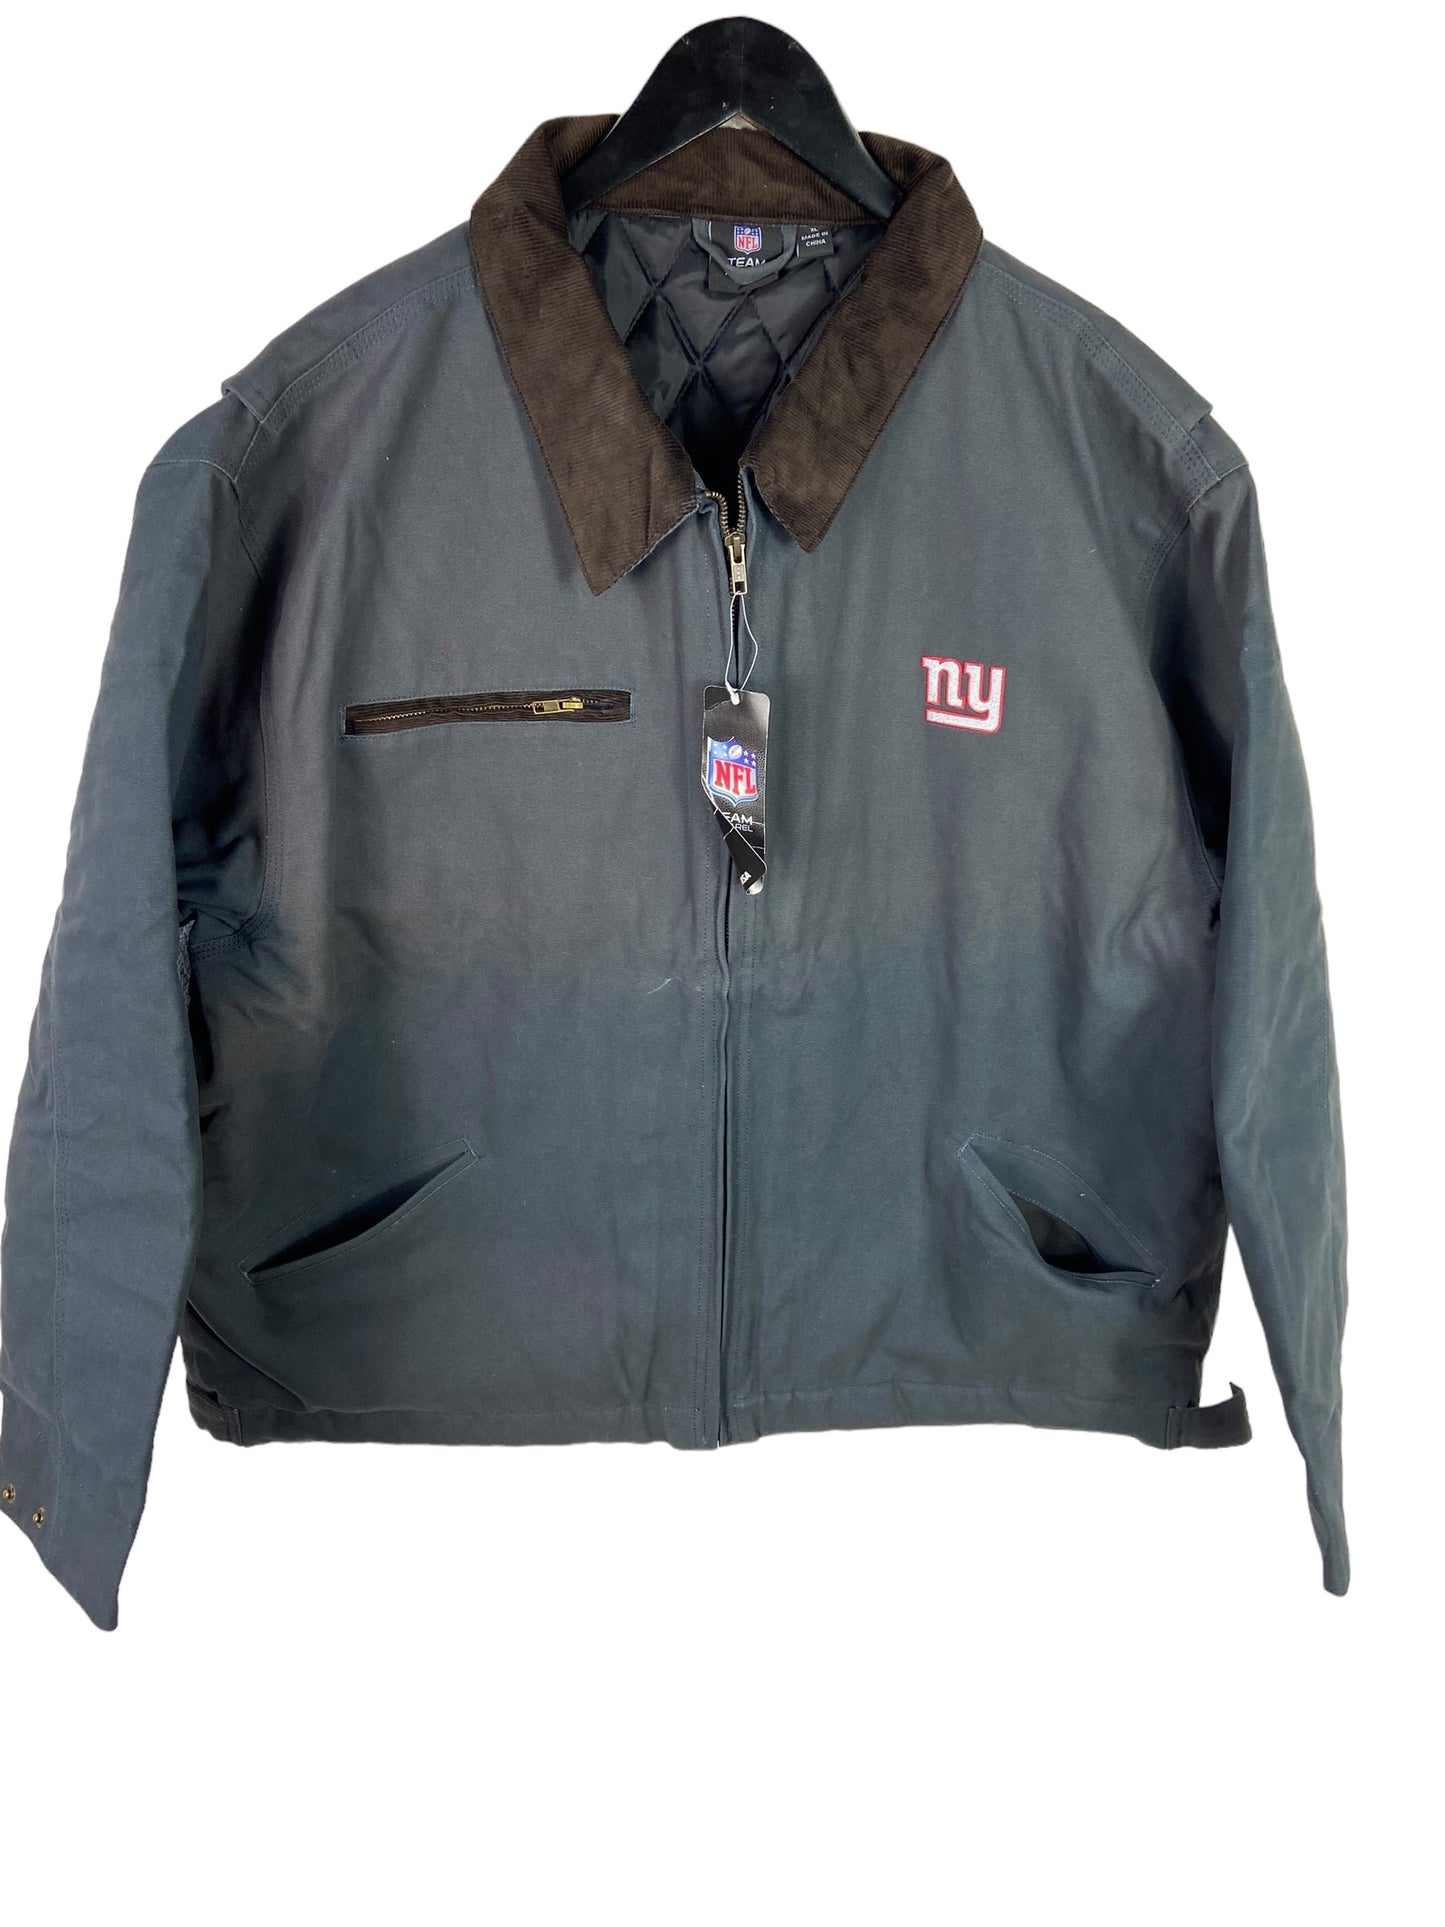 New New York Giants Work Jacket Sz XL